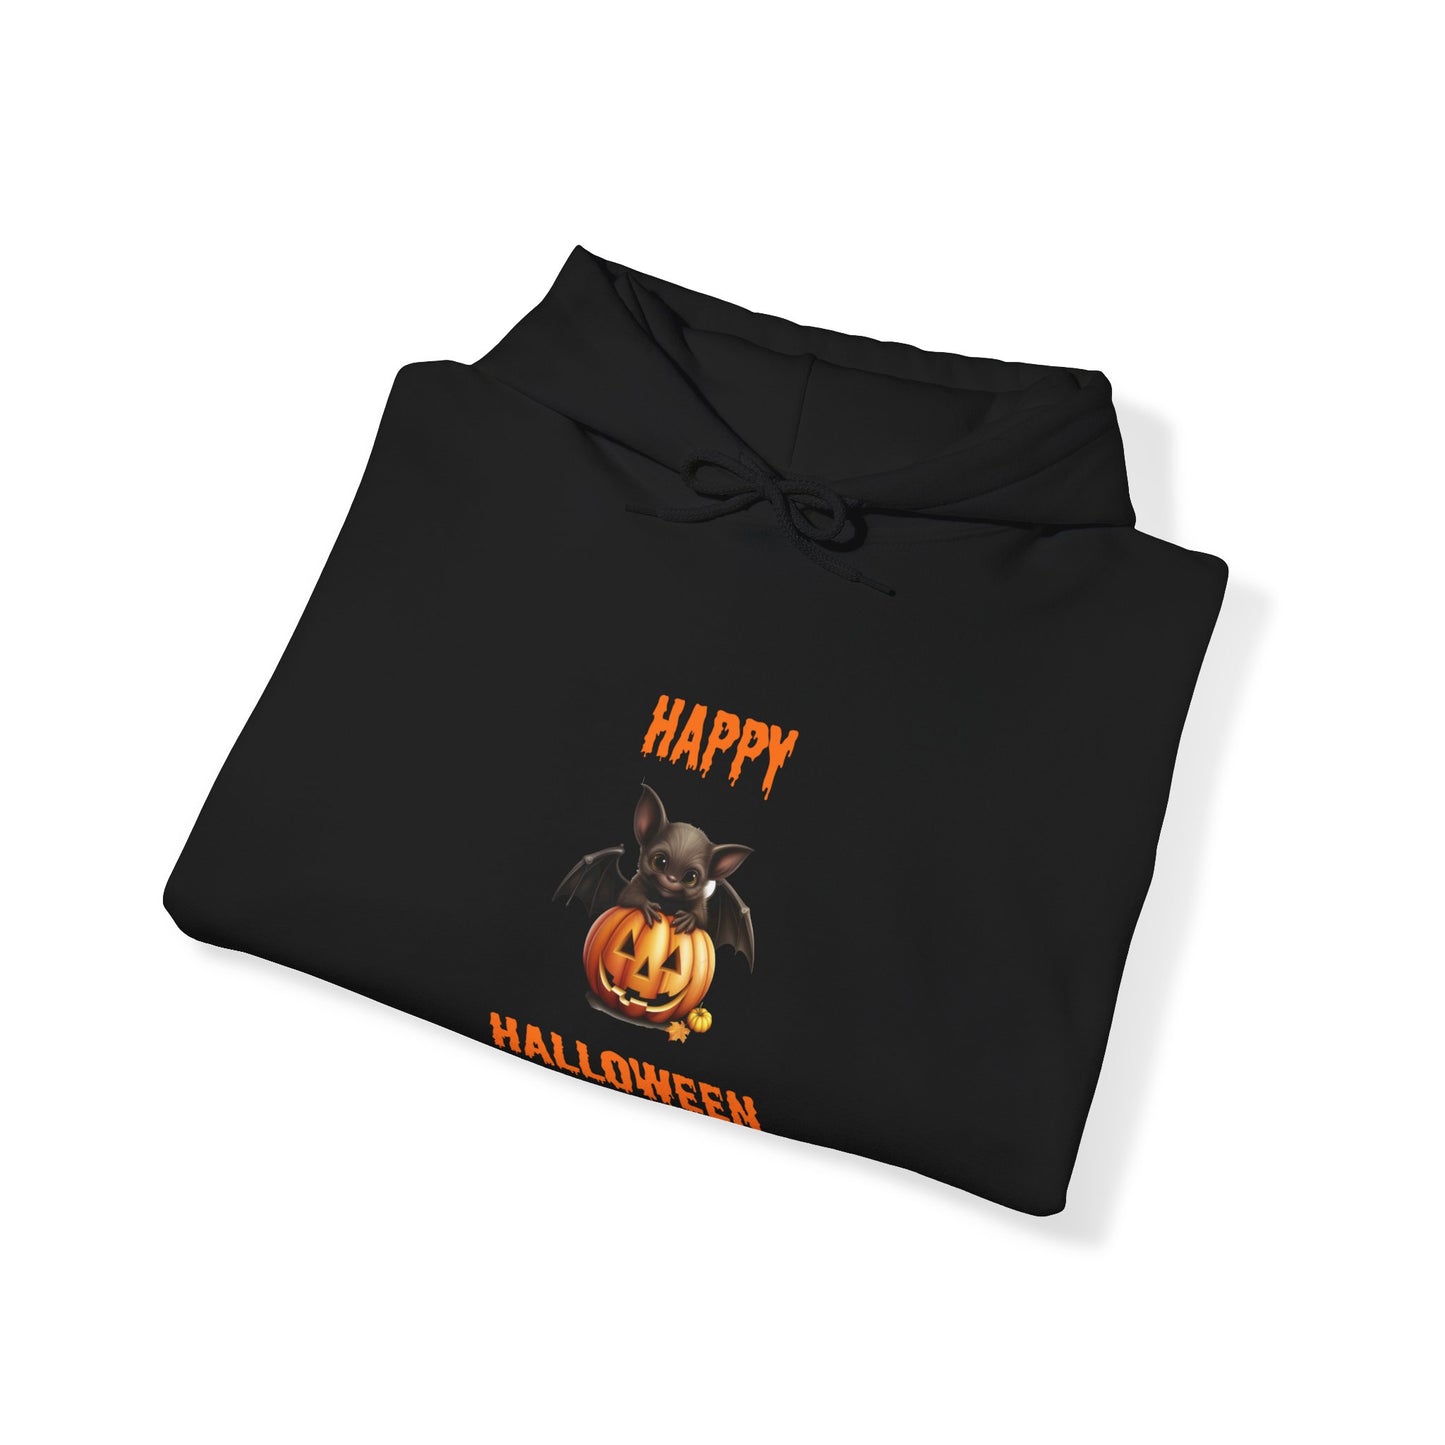 Happy Halloween Bat Hoodie - Unisex Heavy Blend Hooded Sweatshirt